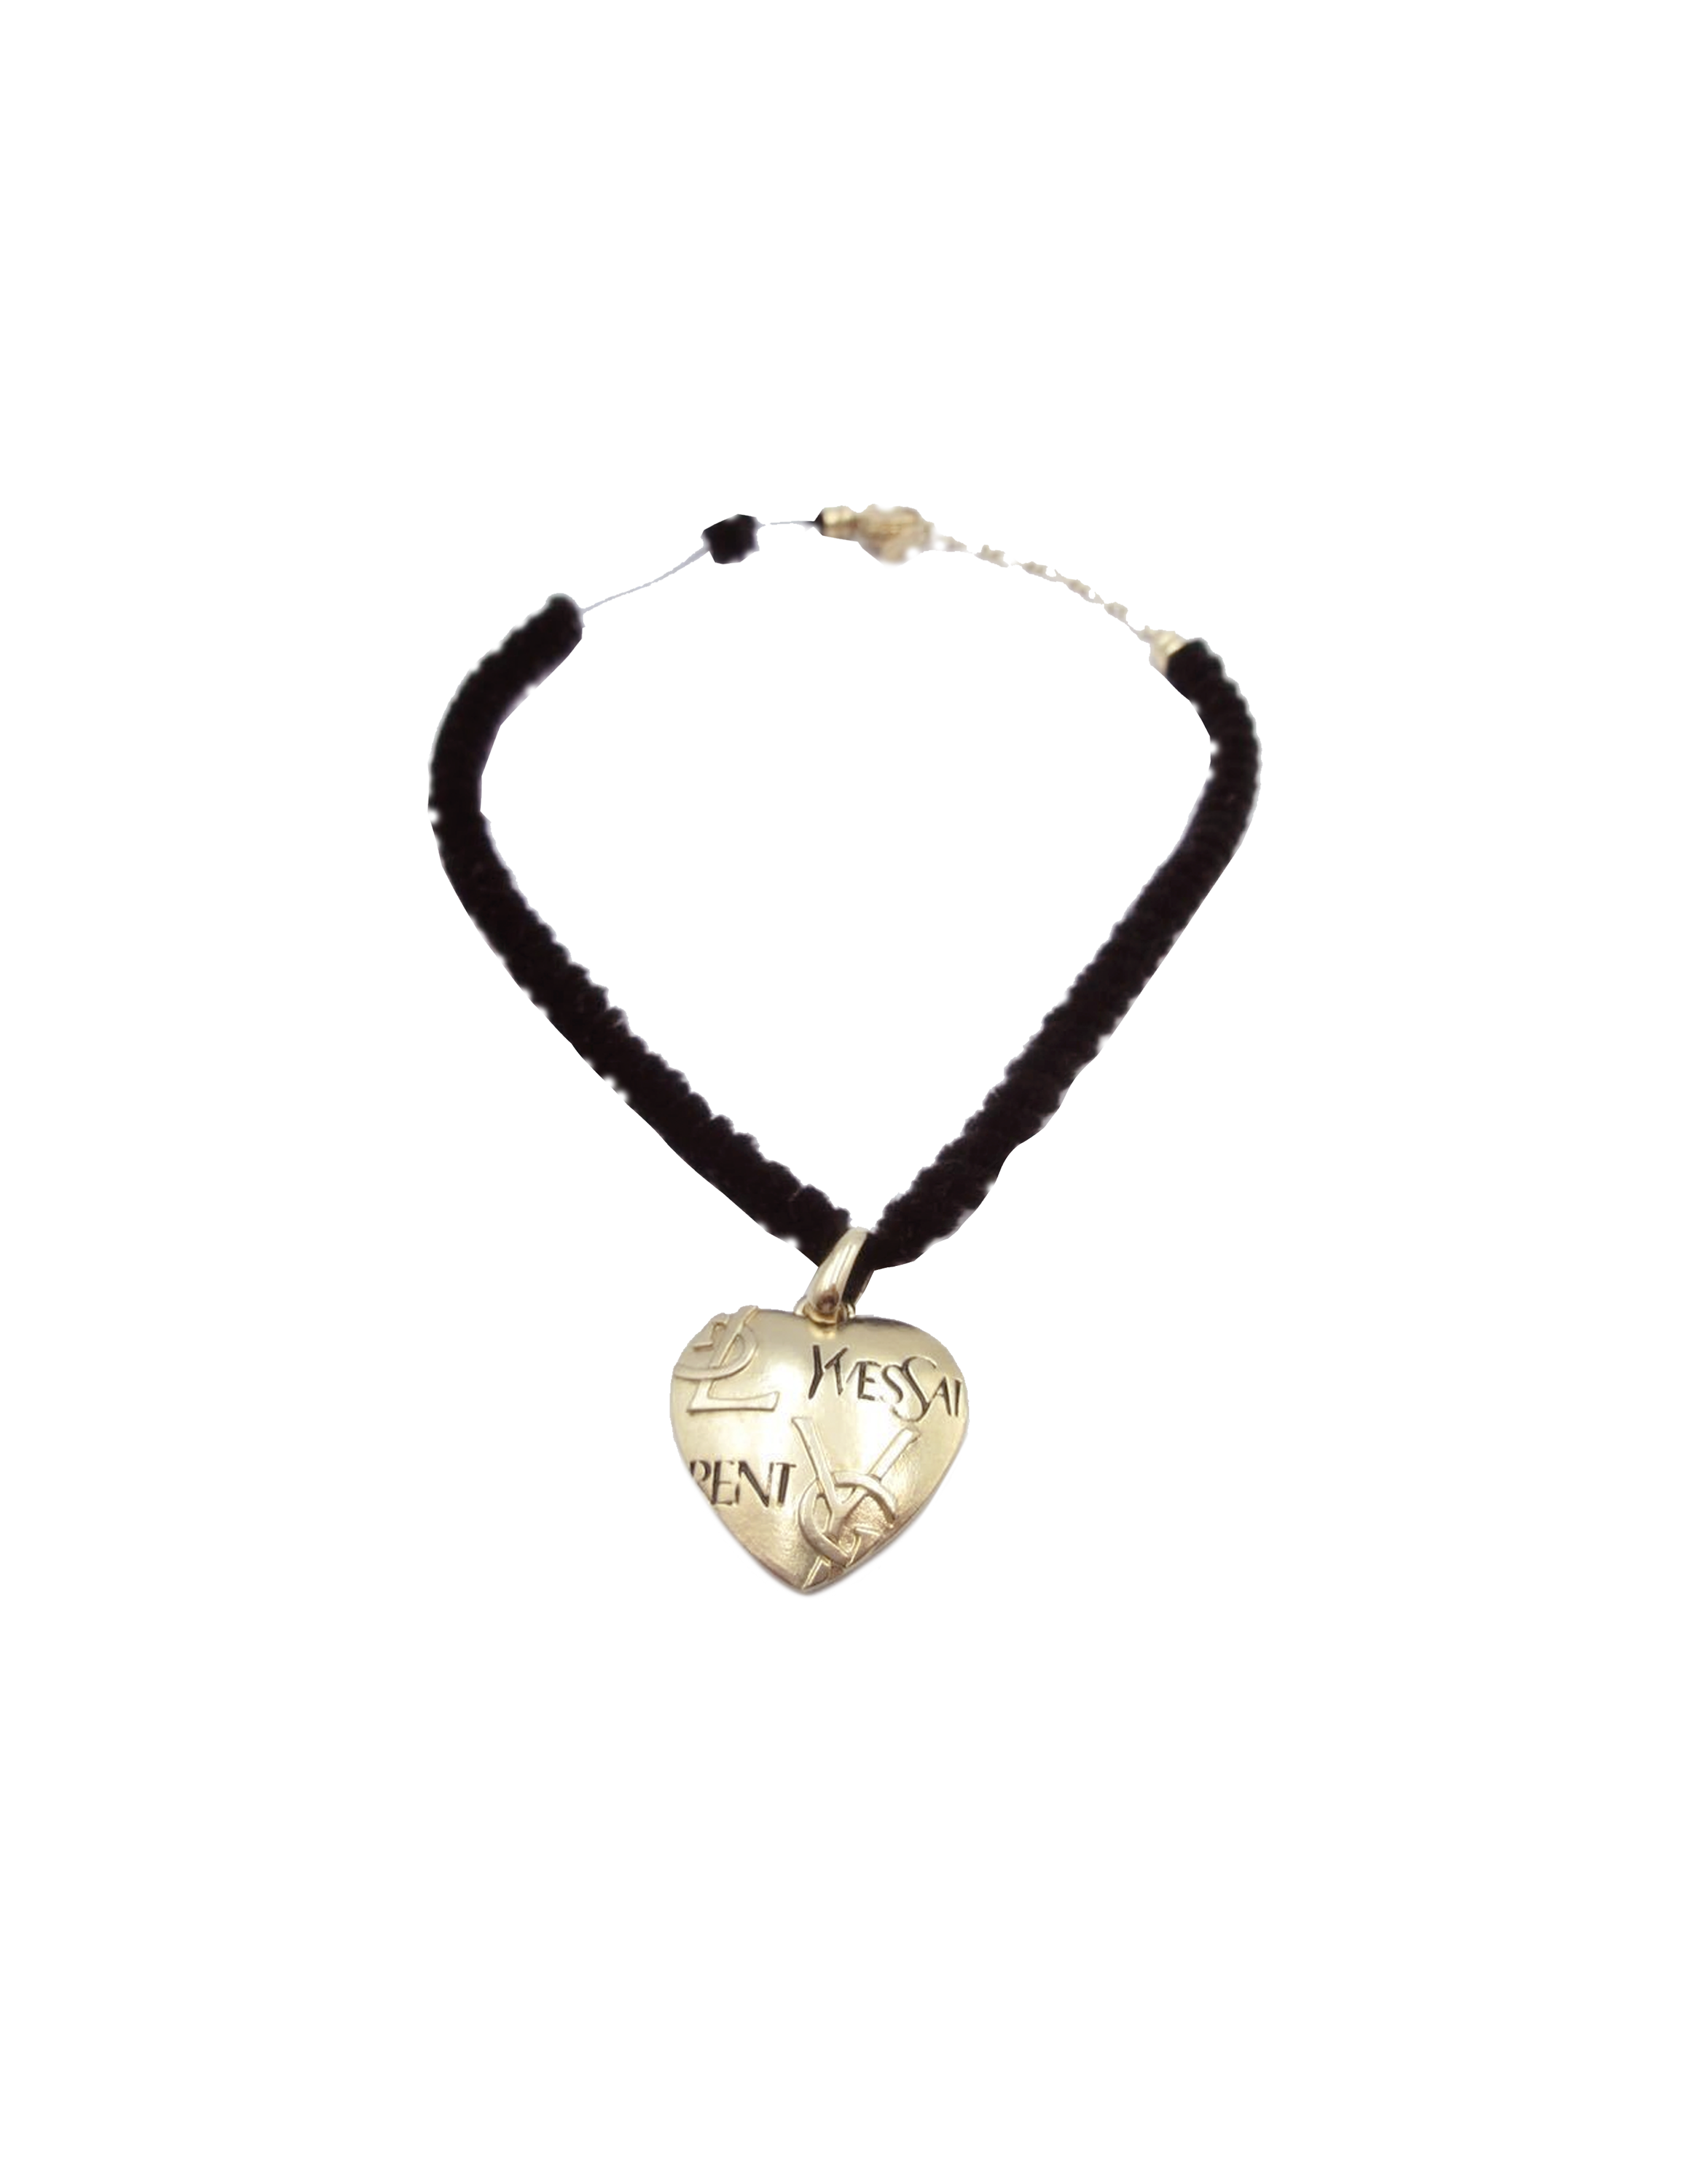 Yves Saint Laurent 1990s Gold Heart Earrings · INTO